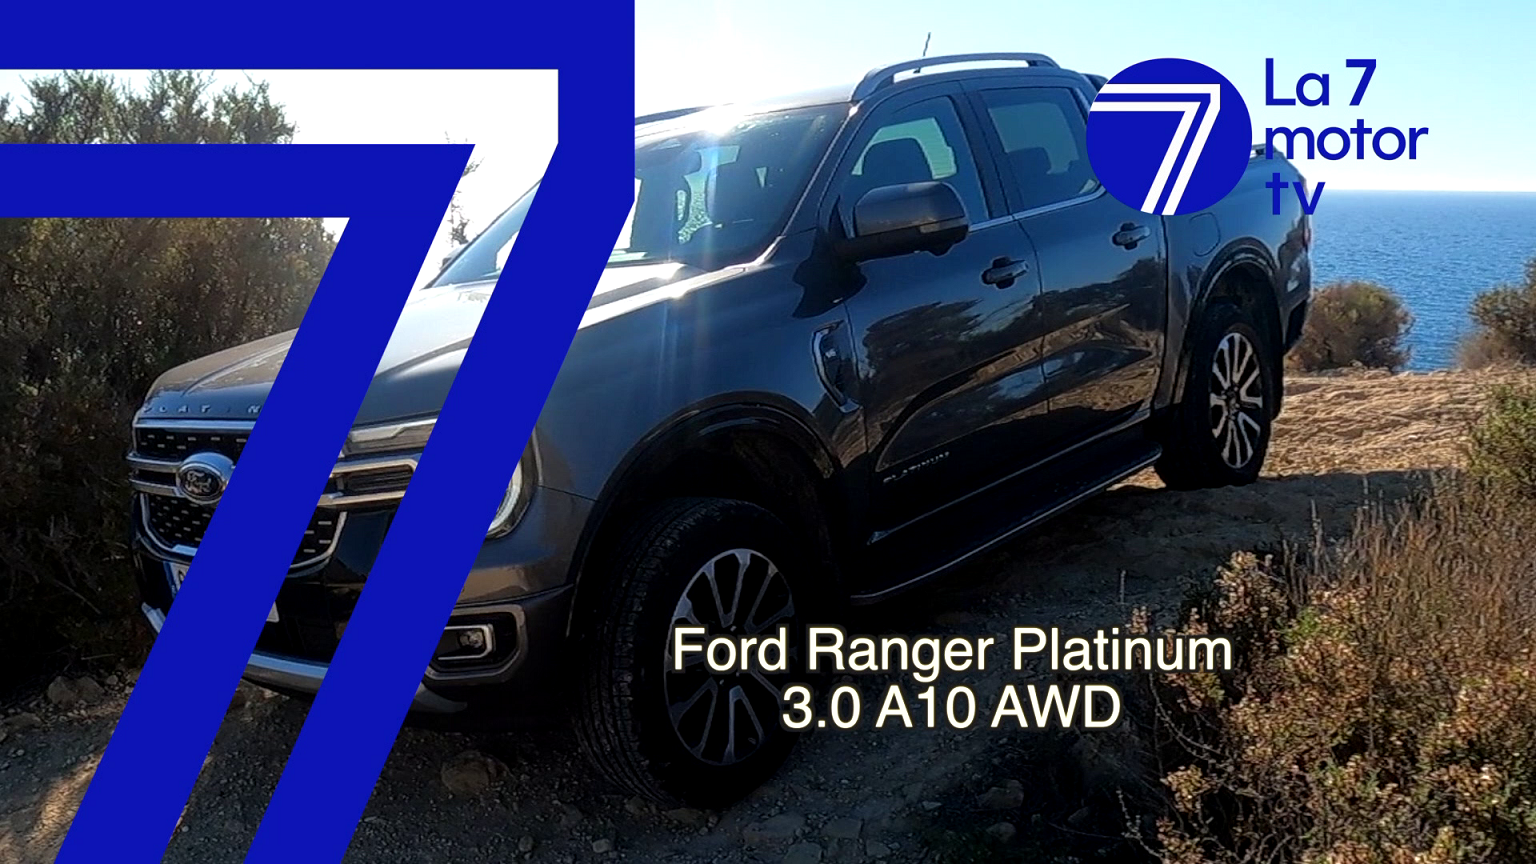 Ford Ranger Platinum 3.0 A10 AWD: una robusta herramienta con detalles de lujo